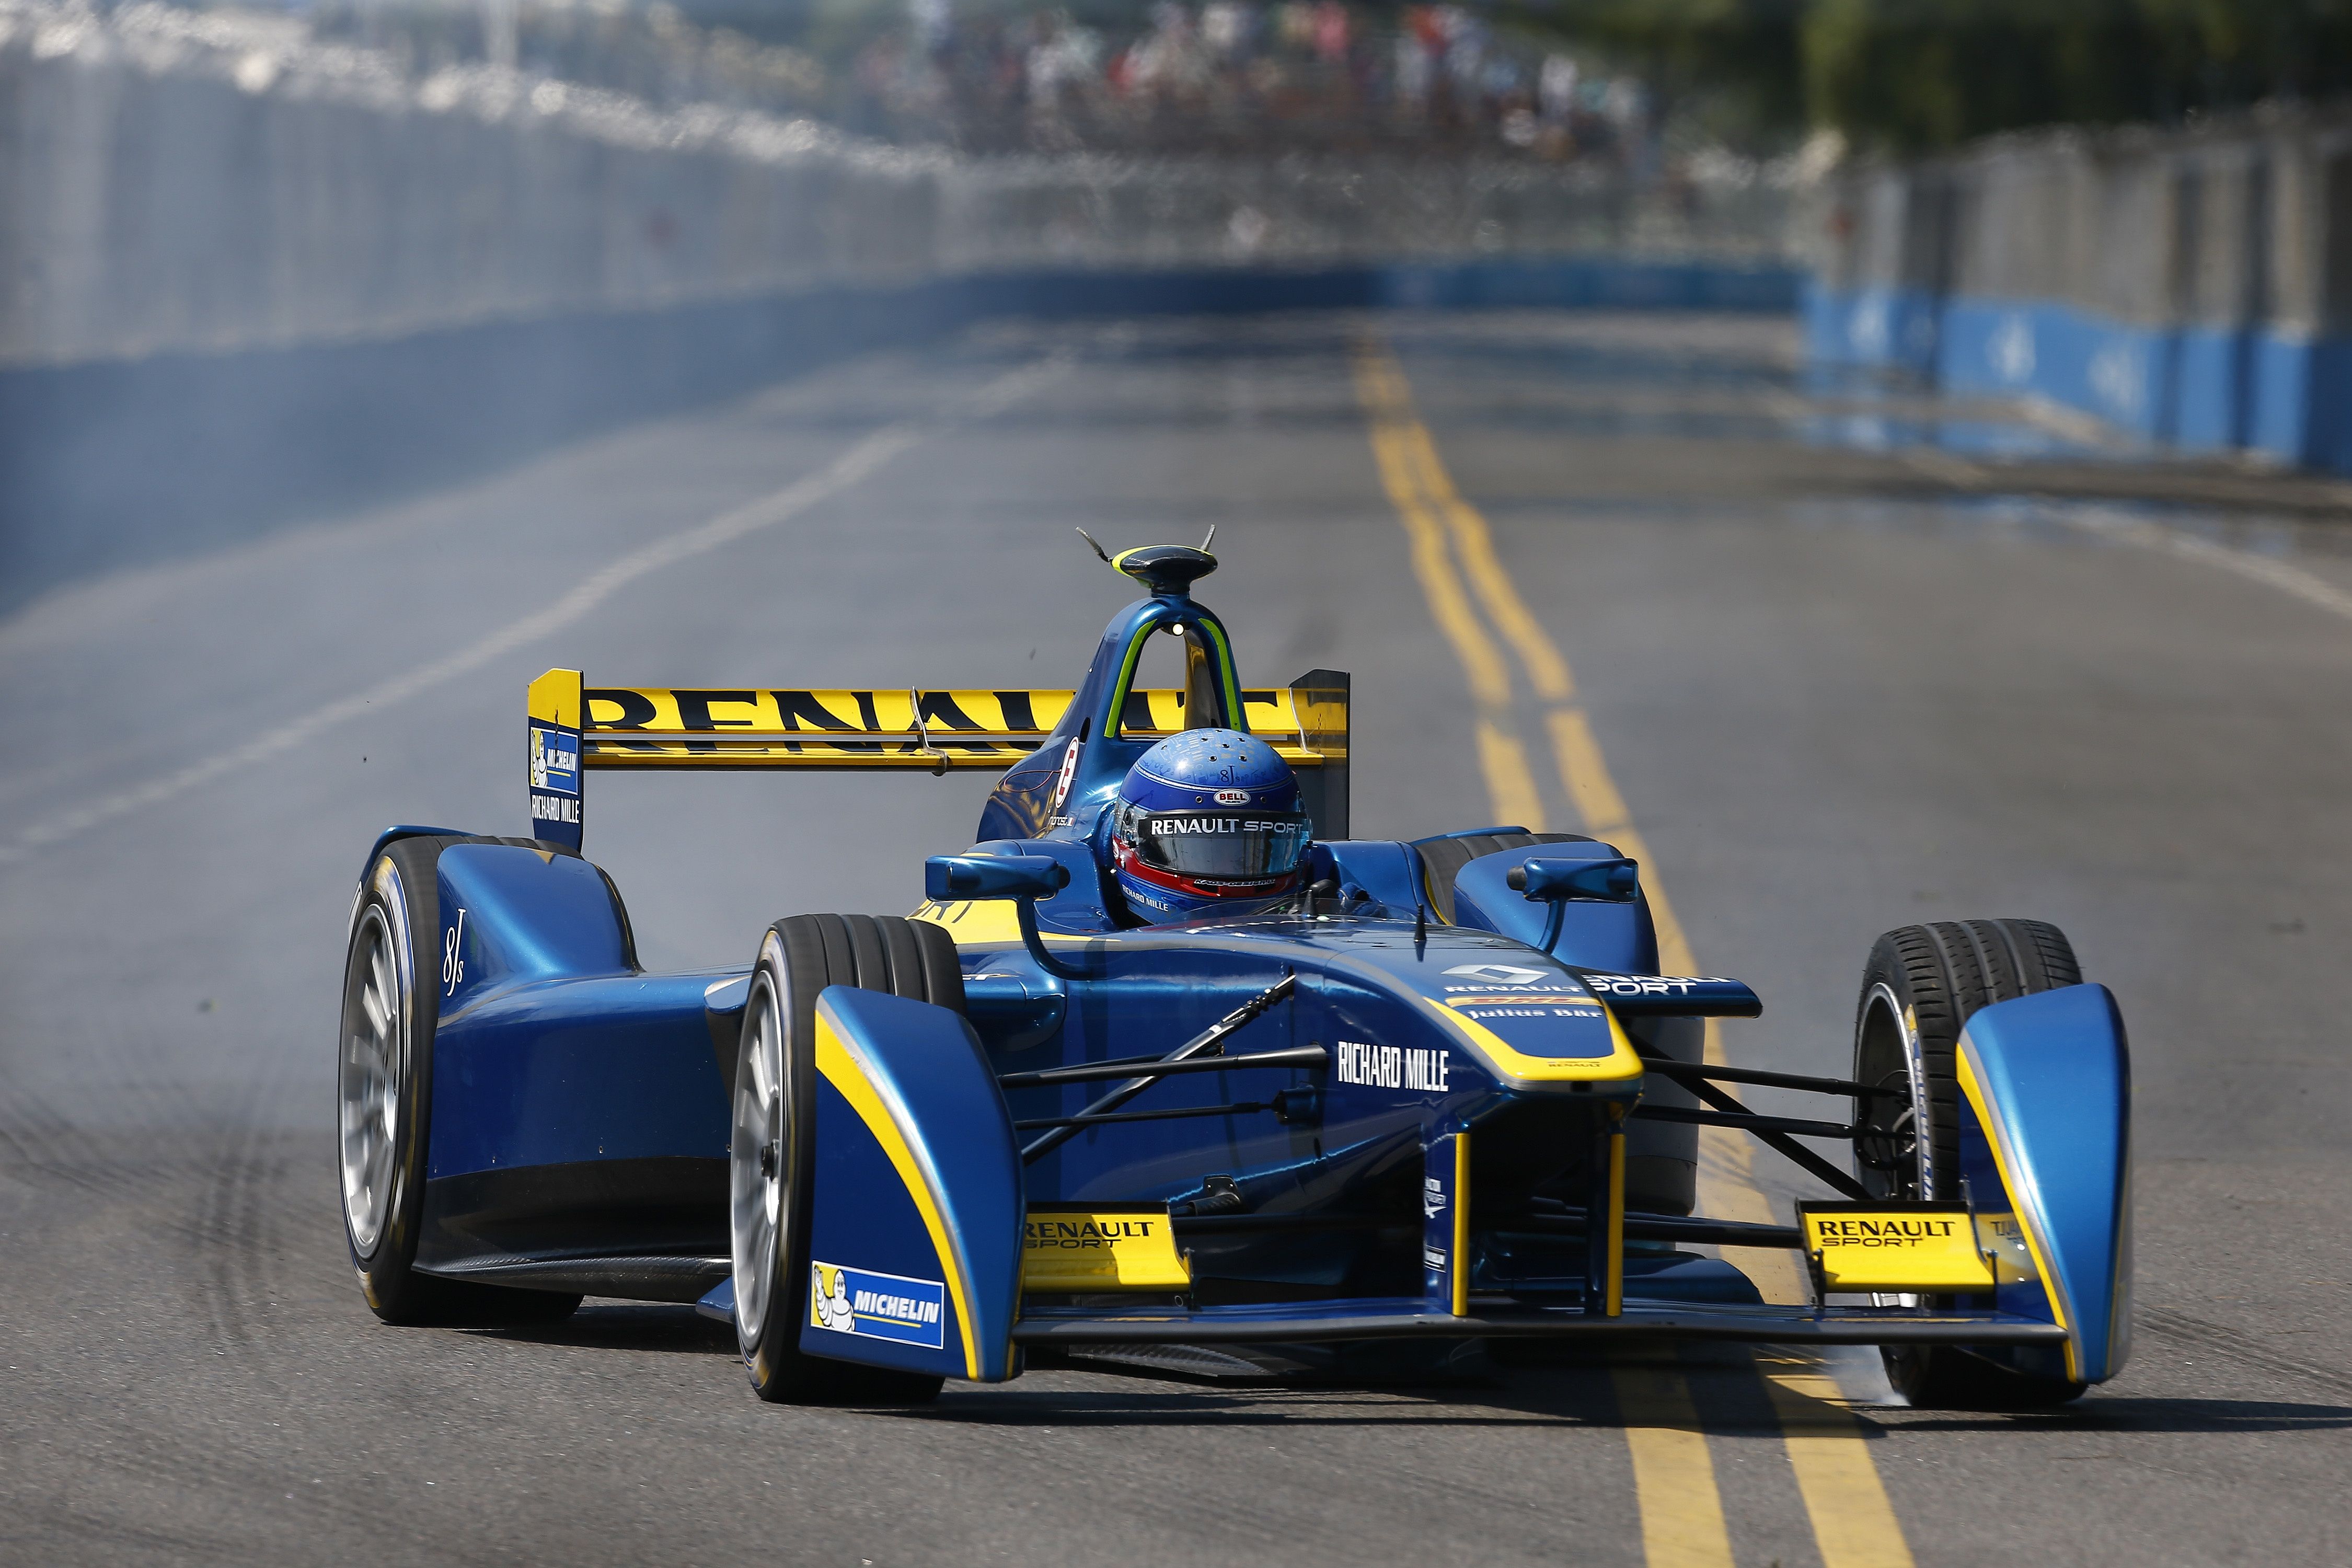 Hier ist Nicolas Prost im Formel E Rennfahrzeug in Argentinien unterwegs. Bildquelle: Renault